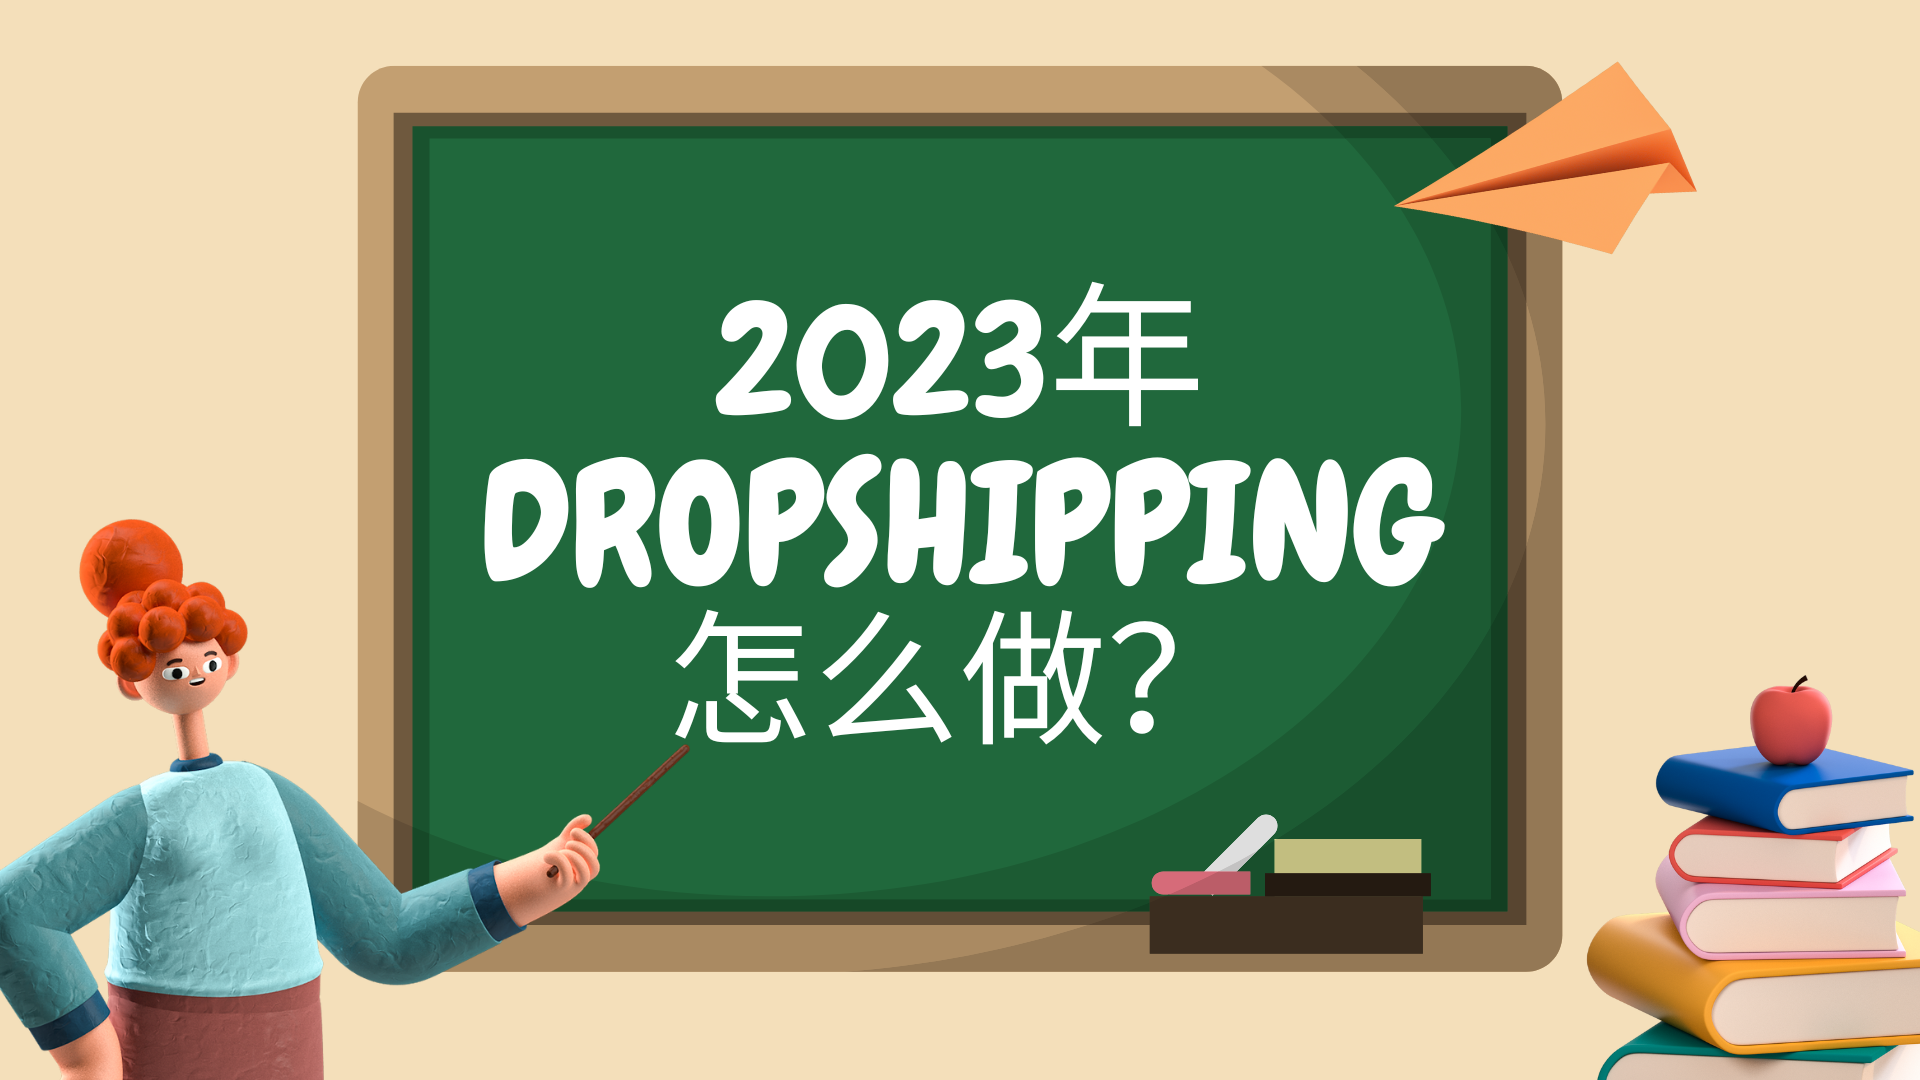 2023年Dropshipping怎么做？早看早上车（上）